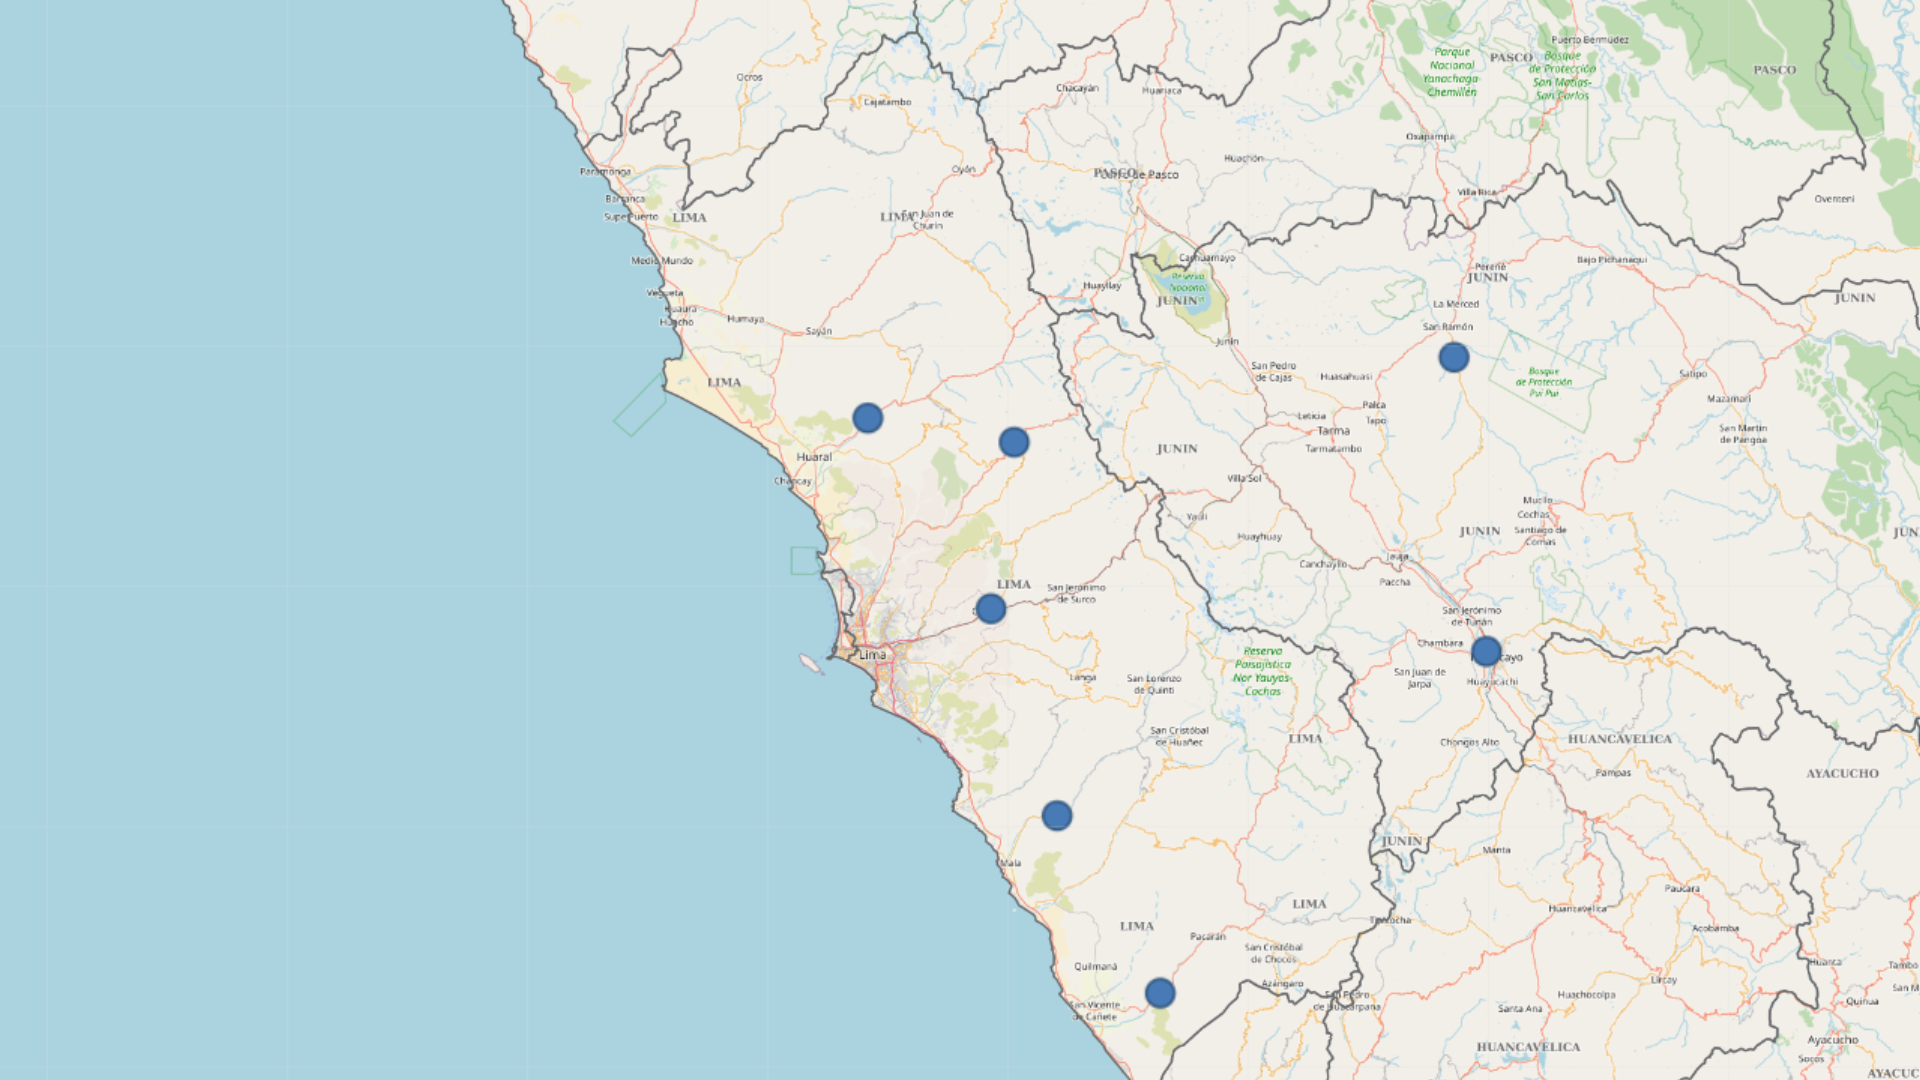 Huaico en Lima: puntos críticos en Lima por aumento de caudal en los ríos